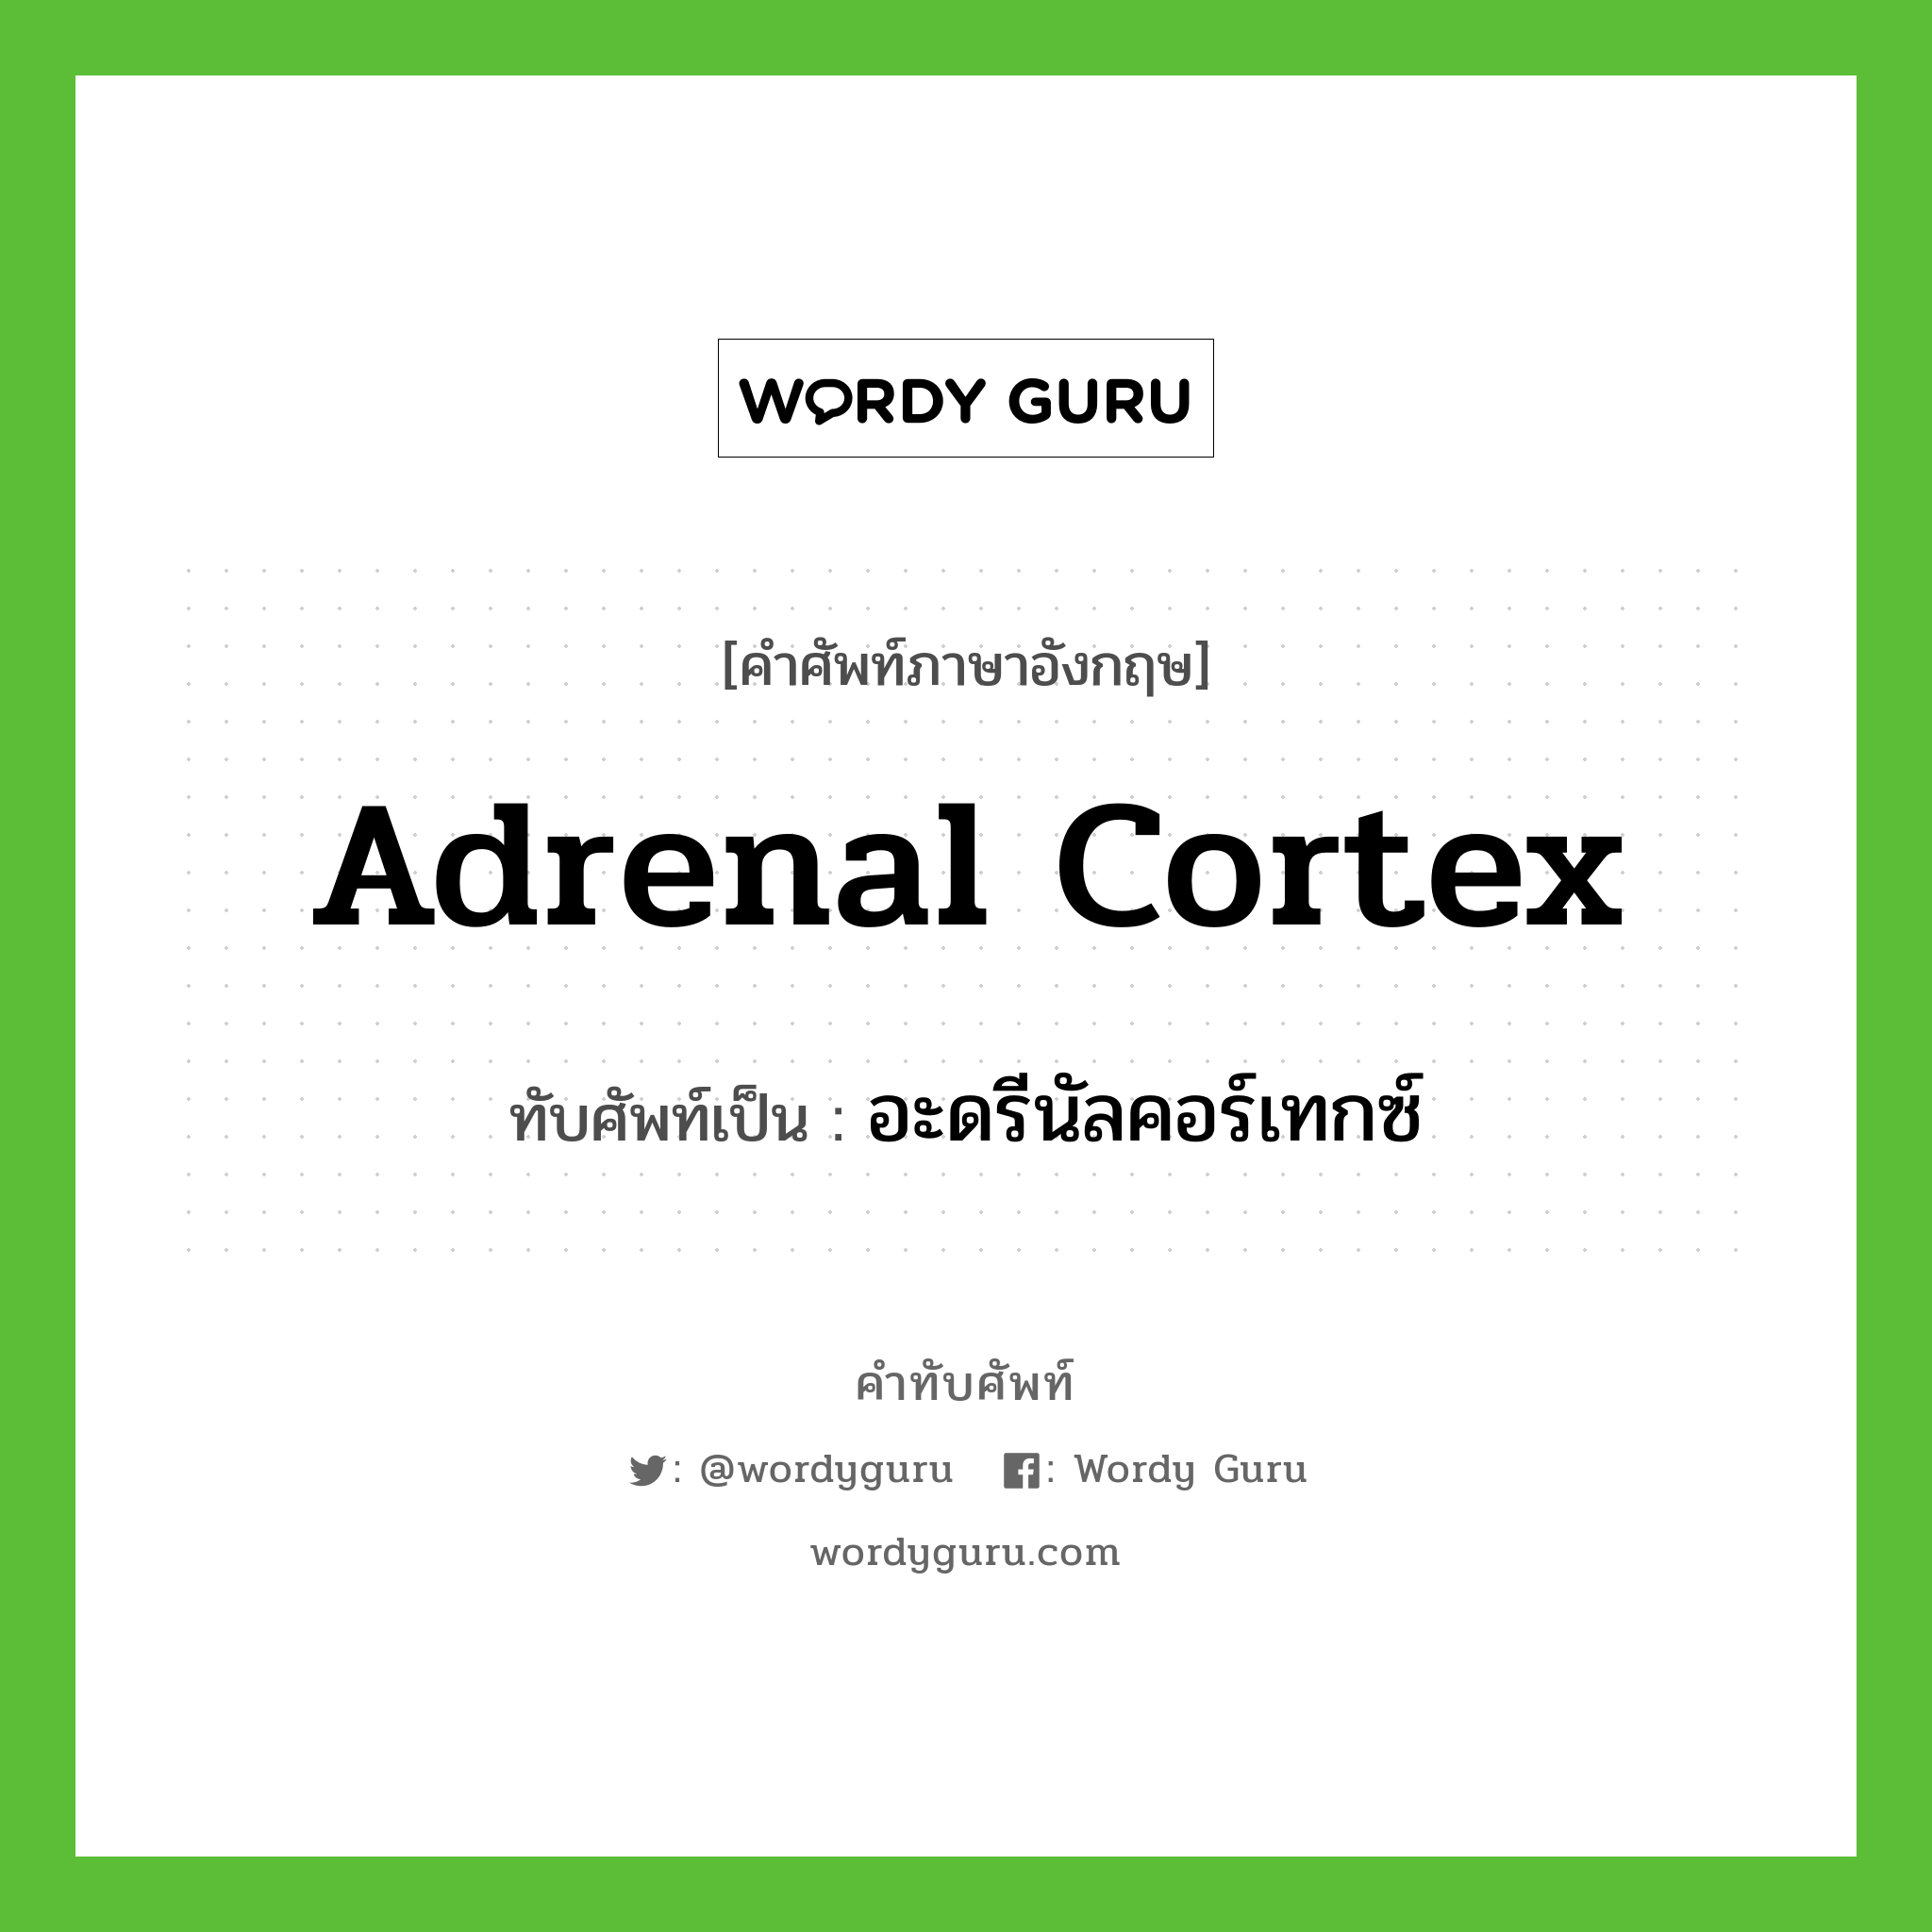 อะดรีนัลคอร์เทกซ์ เขียนอย่างไร?, คำศัพท์ภาษาอังกฤษ อะดรีนัลคอร์เทกซ์ ทับศัพท์เป็น adrenal cortex